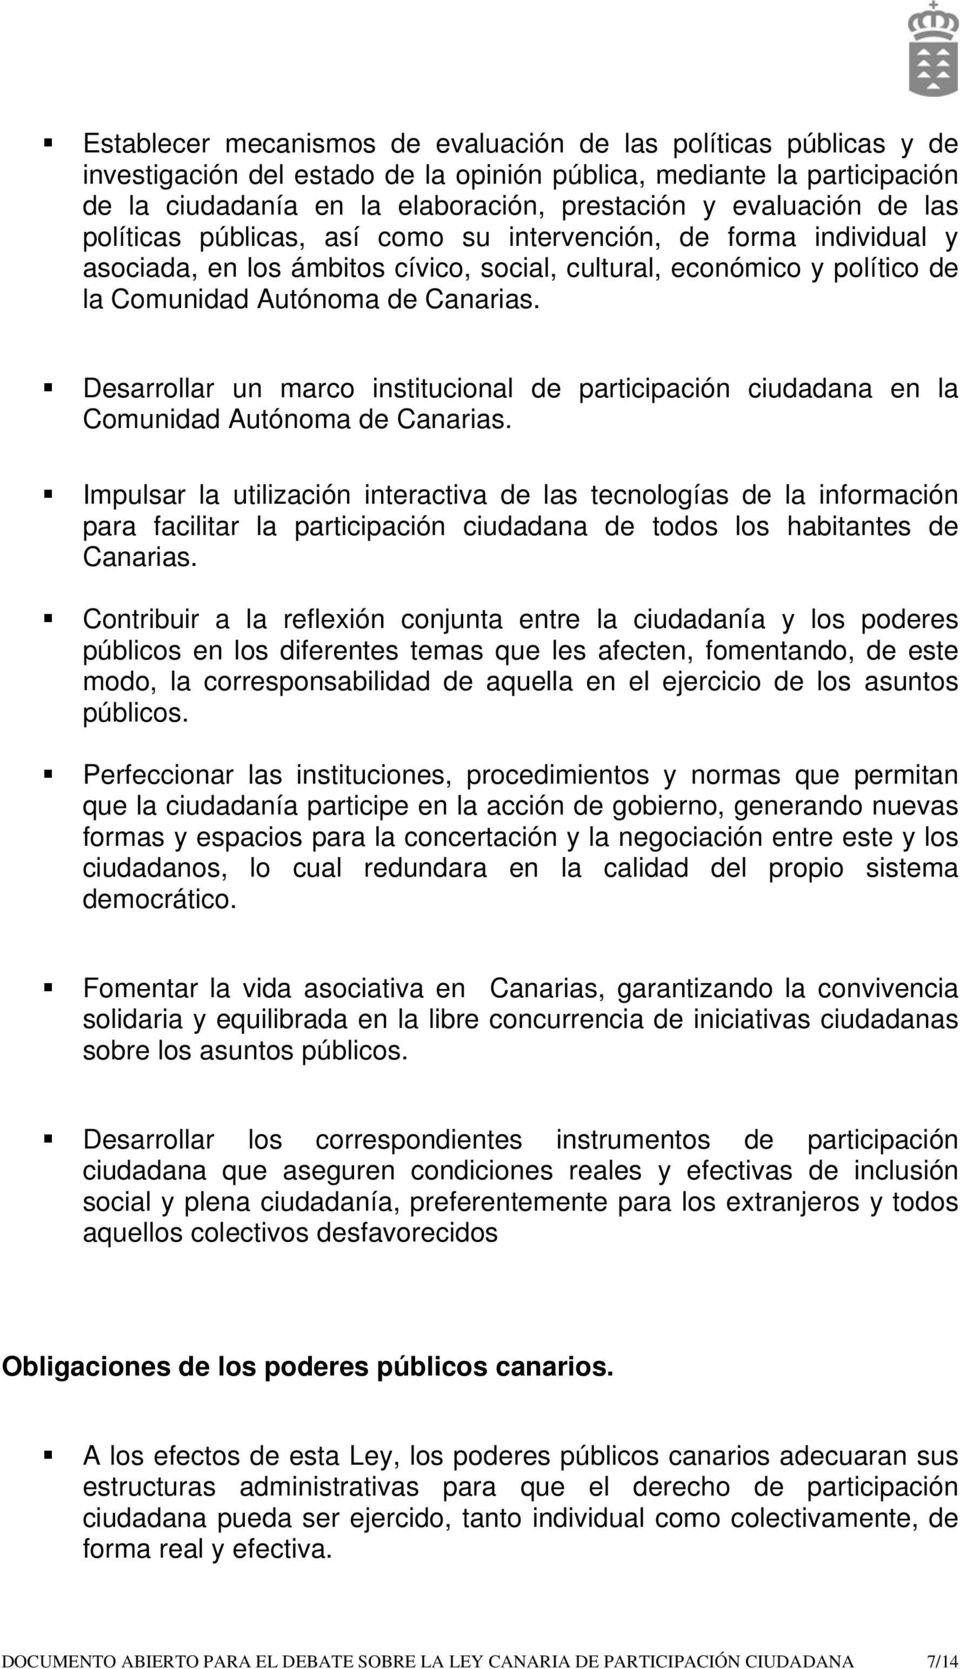 Desarrollar un marco institucional de participación ciudadana en la Comunidad Autónoma de Canarias.